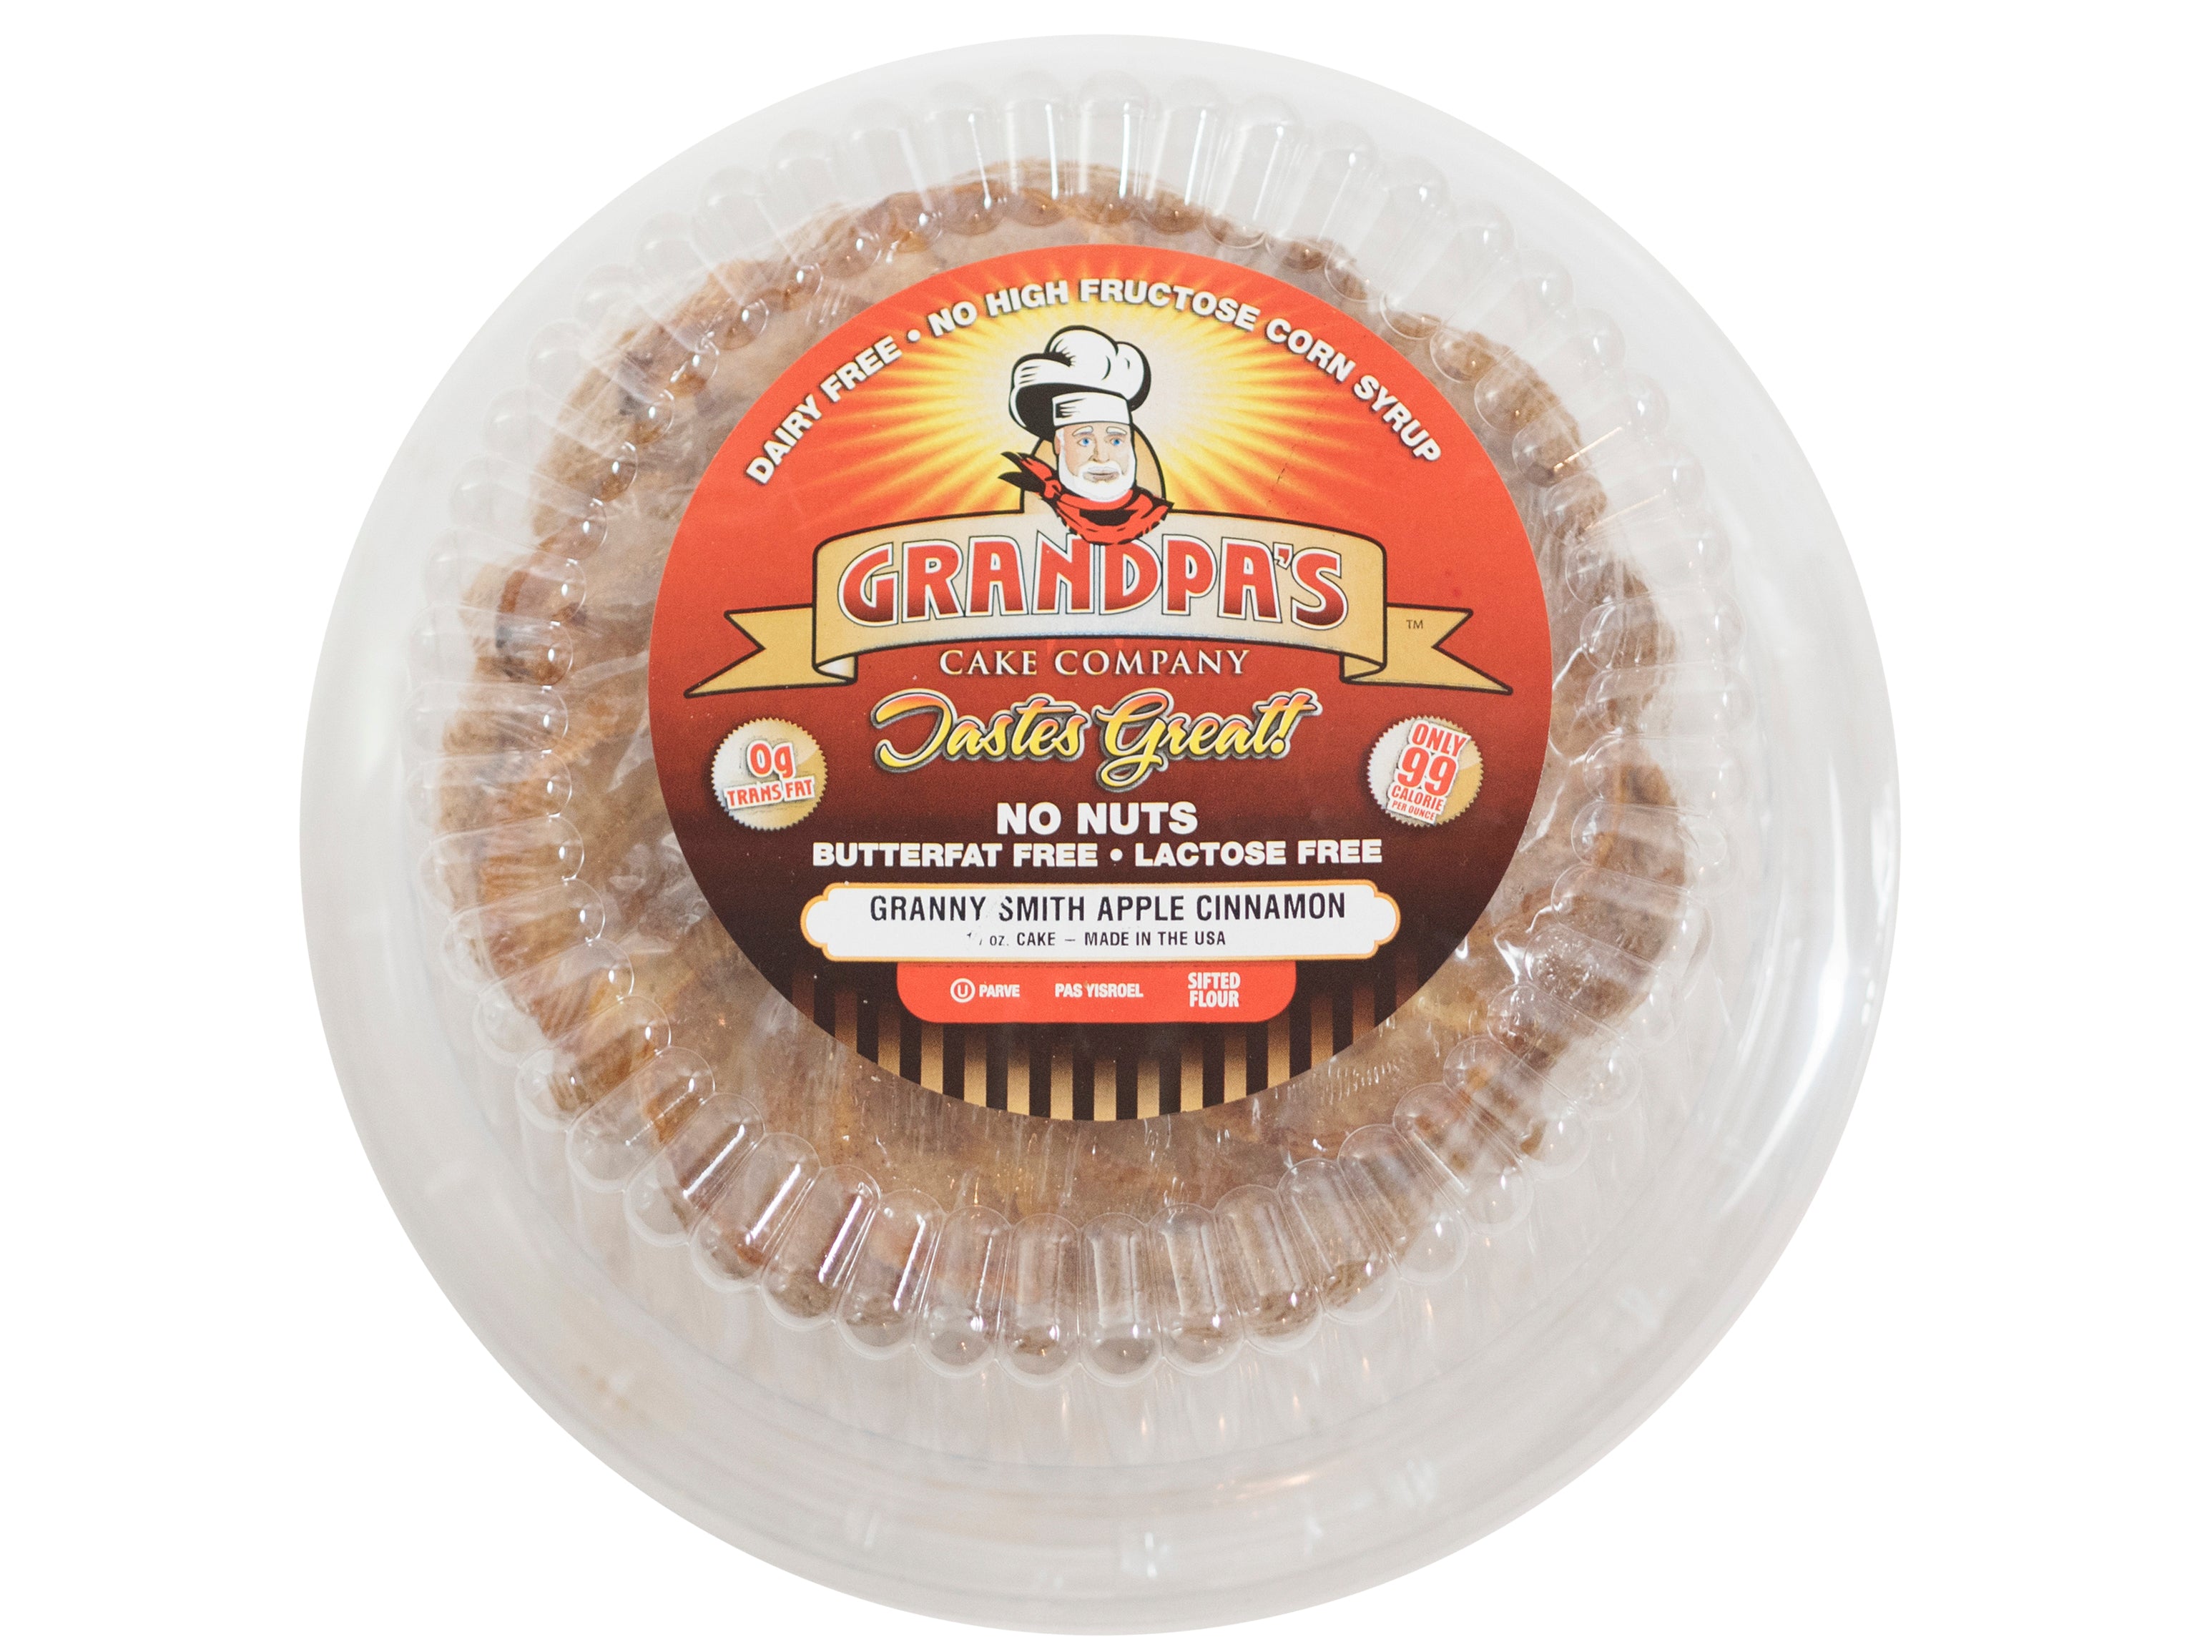 The Granny Smith Apple Cinnamon Grandpascakes